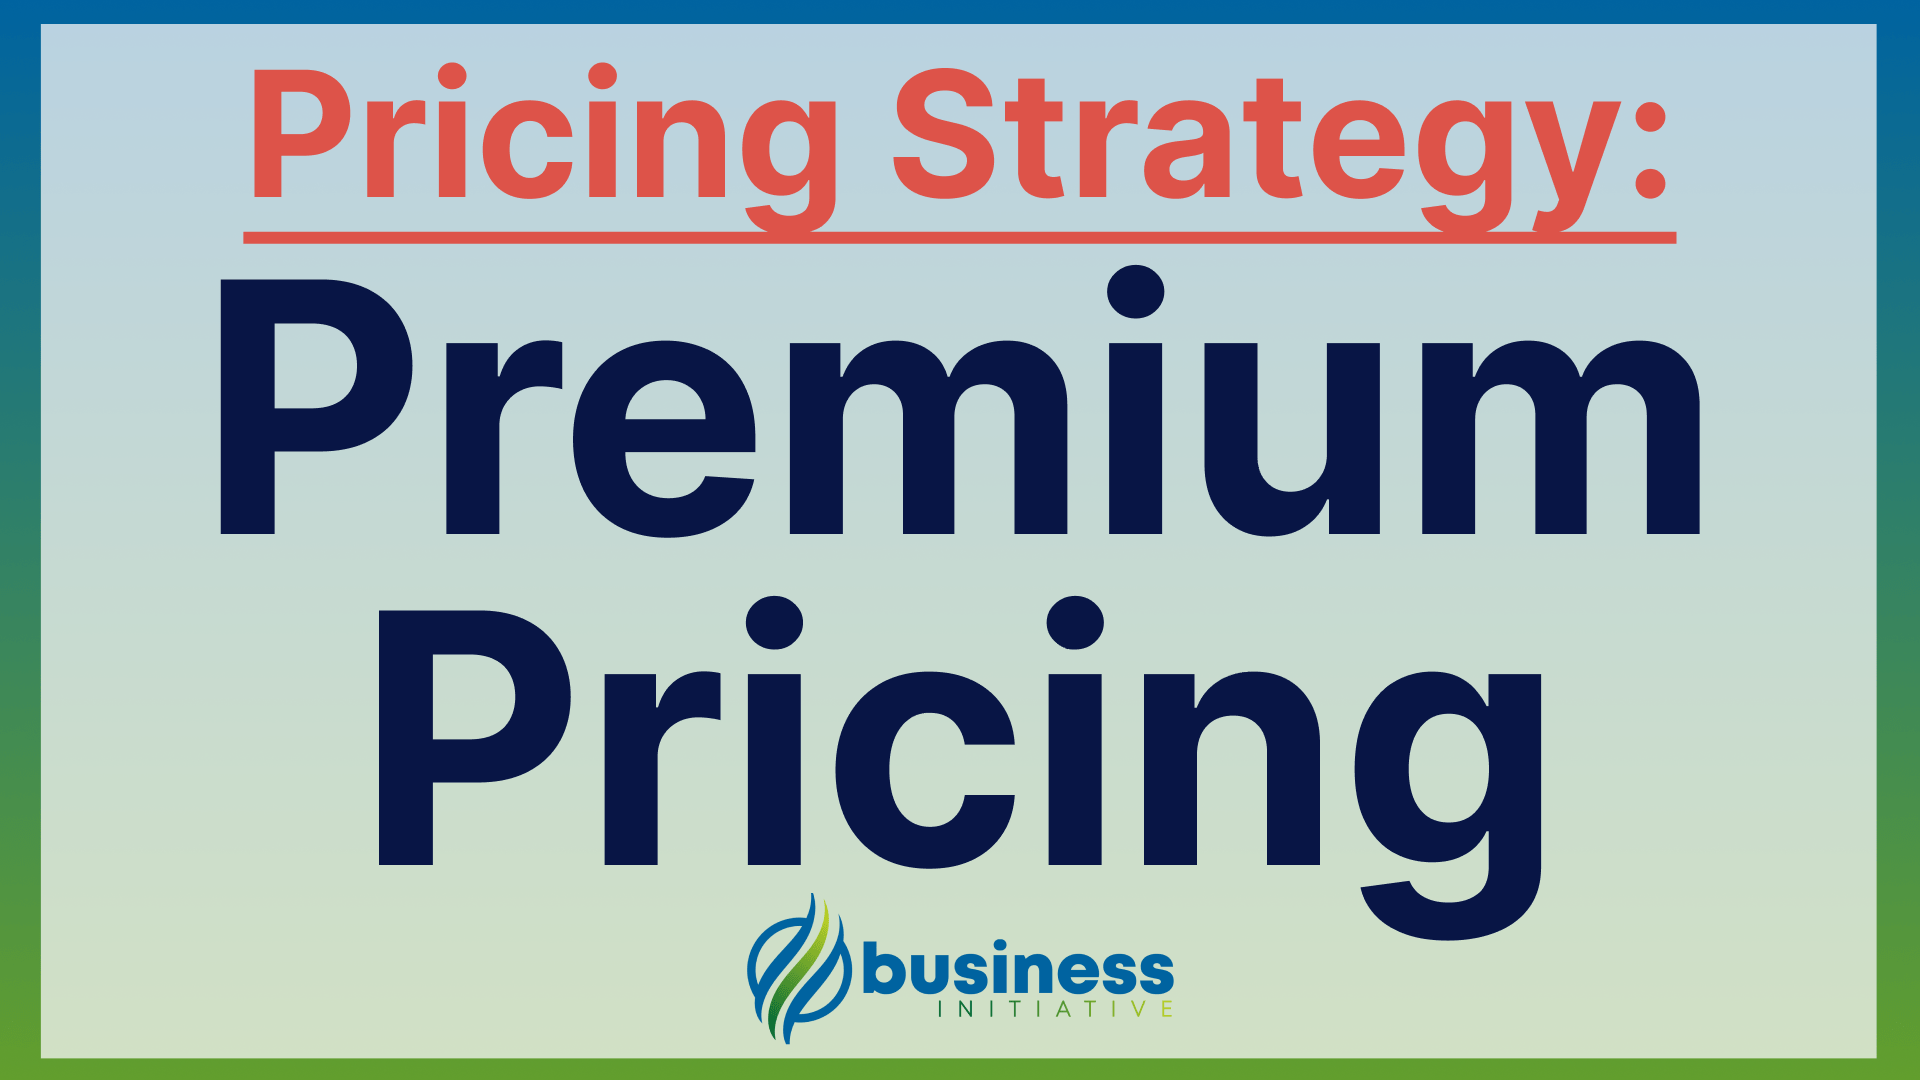 premium pricing